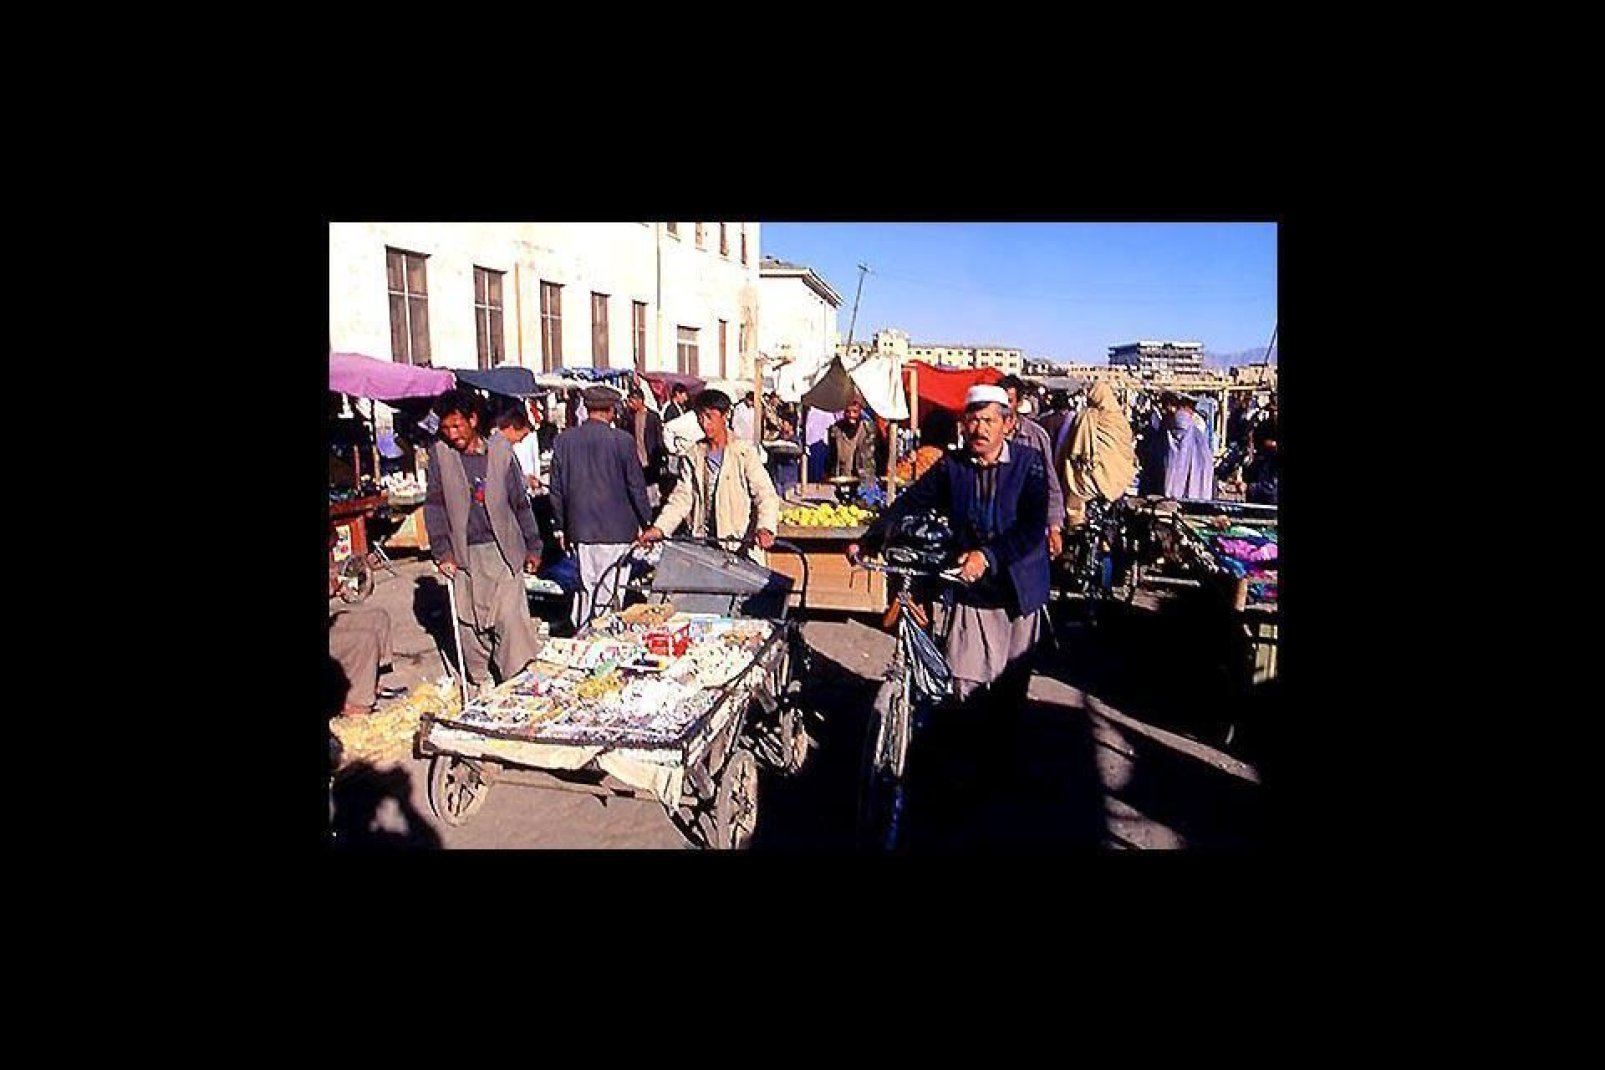 Kaboul est la capitale et la principale ville d'Afghanistan. Cette cité très ancienne a été fondée il y a environ 3 500 ans.